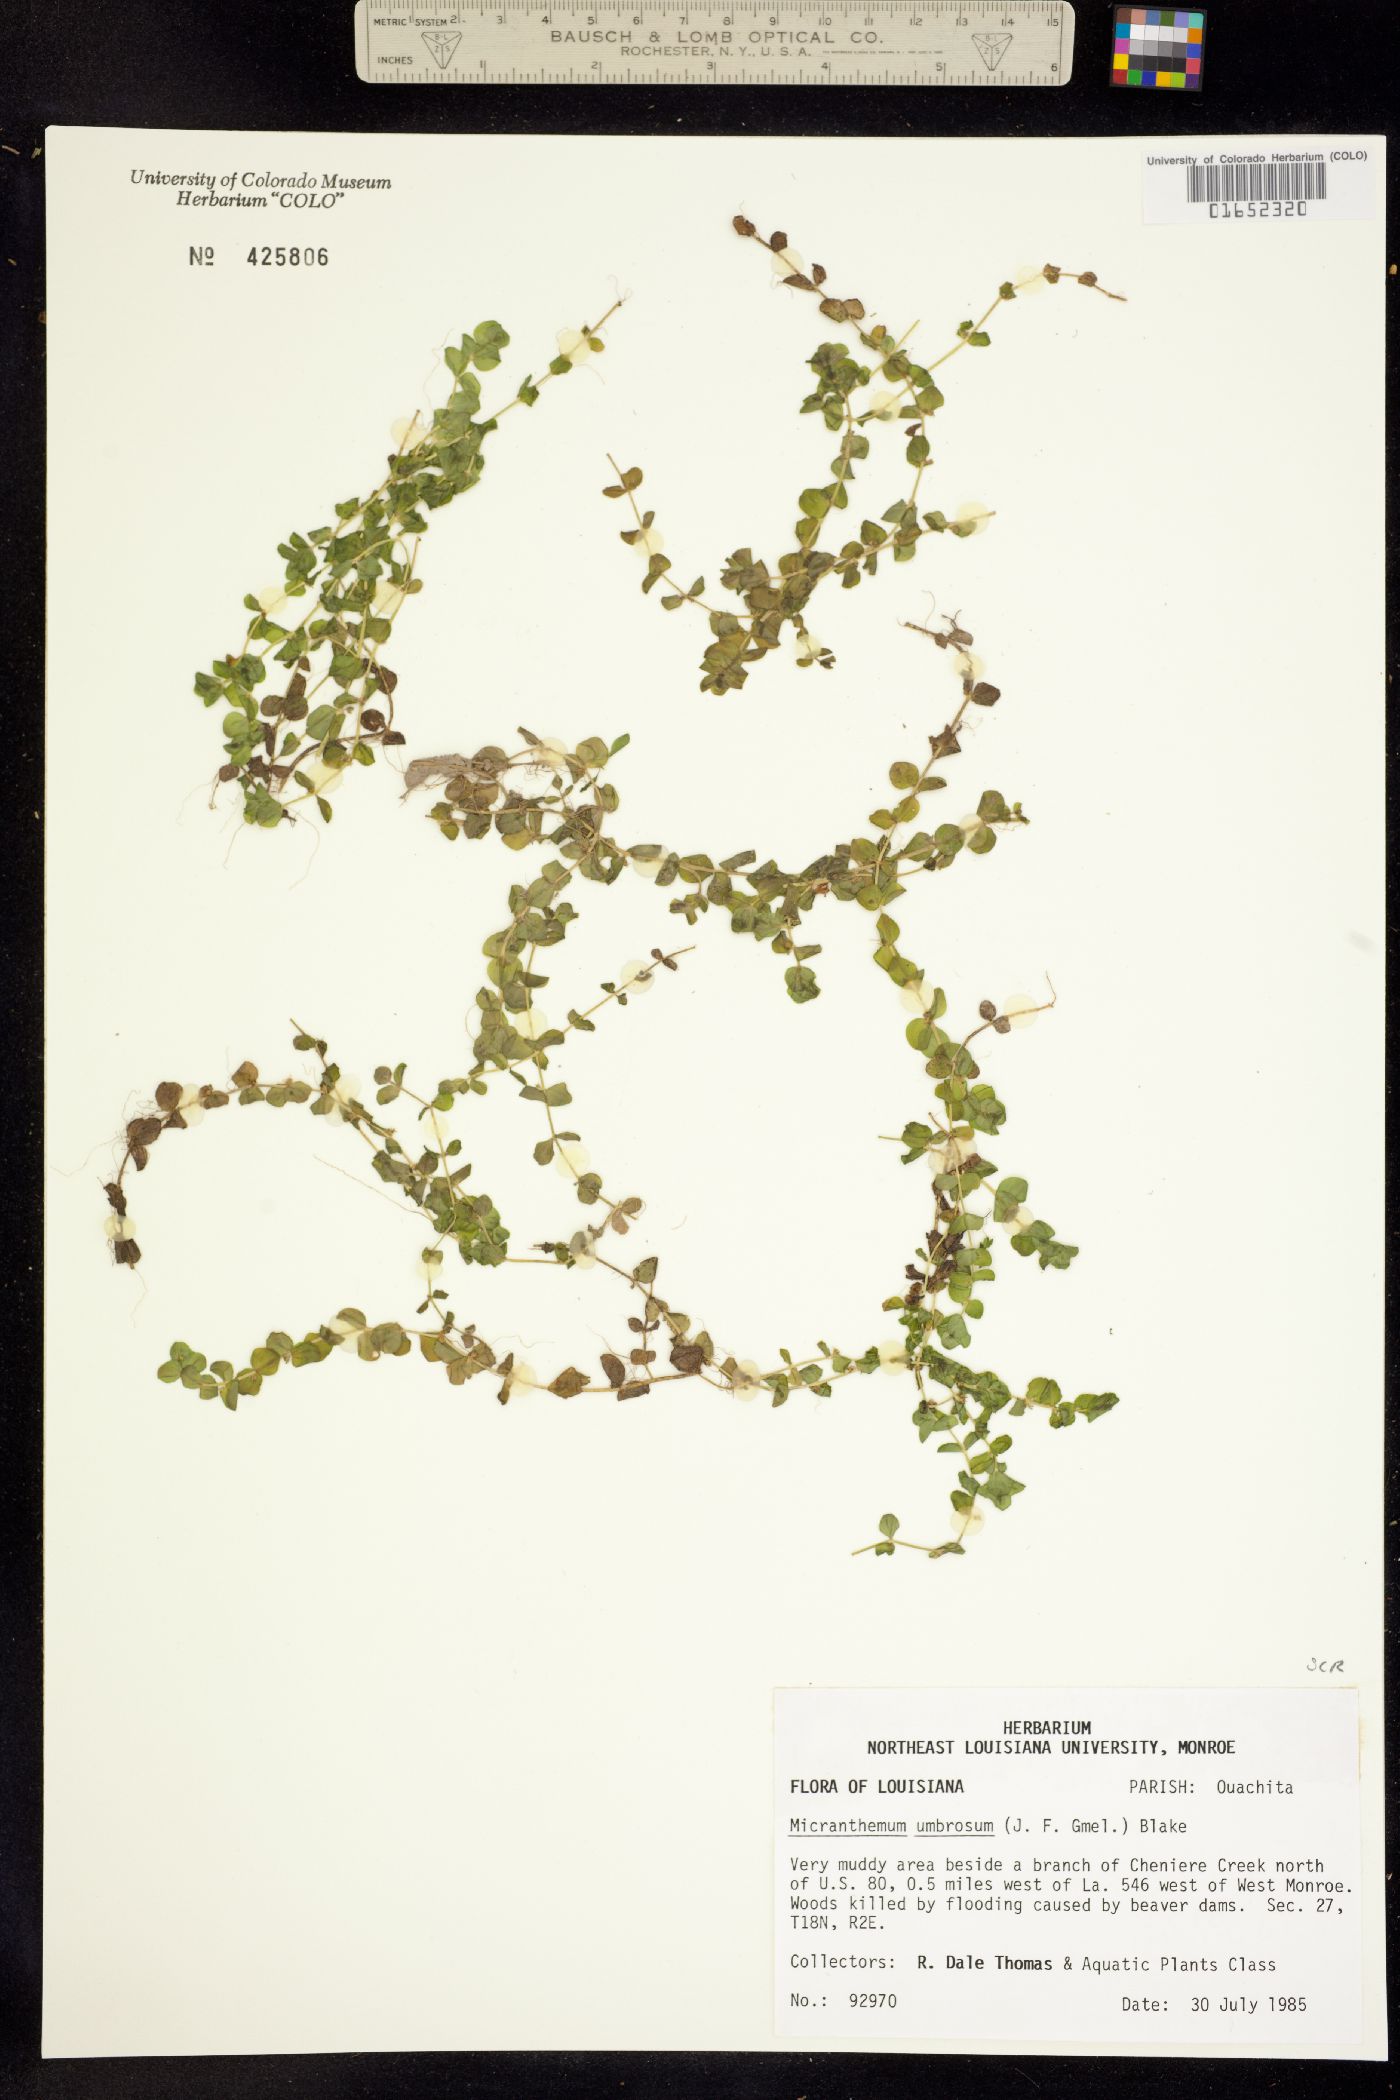 Micranthemum image